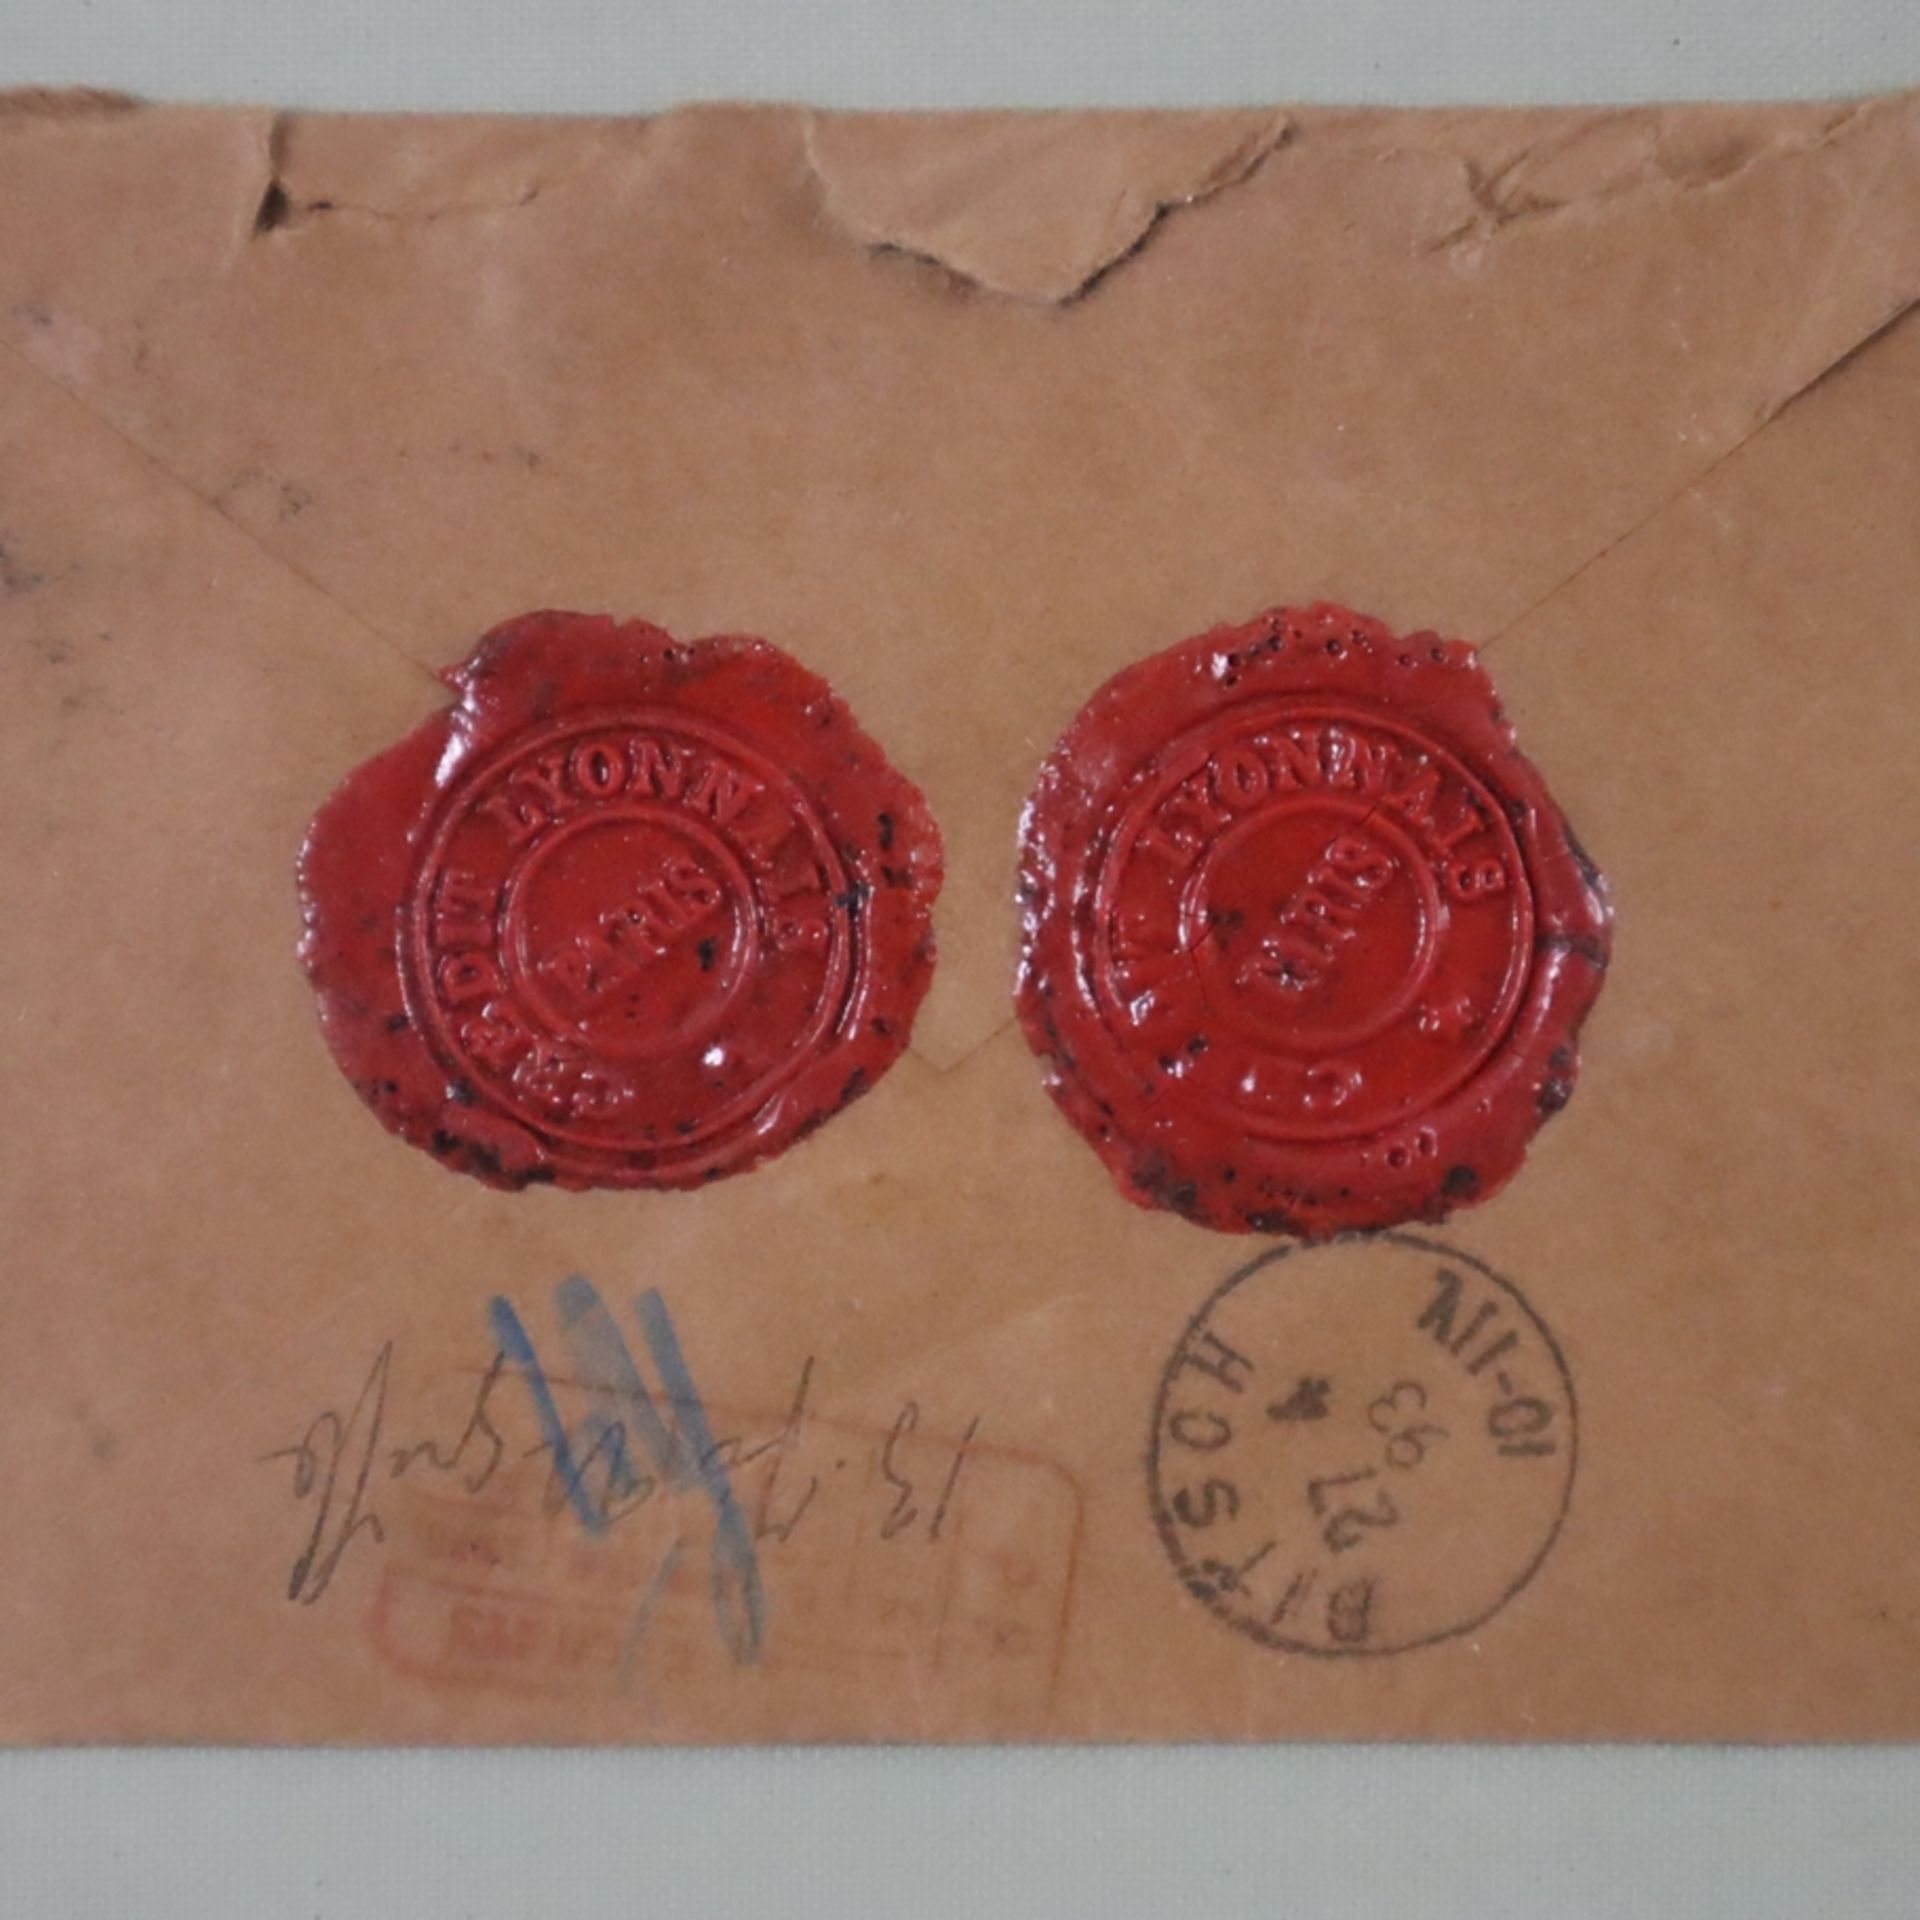 Alte Briefumschläge mit Siegeln - Ende 19.Jh., 2x mit roten Siegeln "Credit Lyonnais Paris" (2+5),  - Bild 4 aus 5